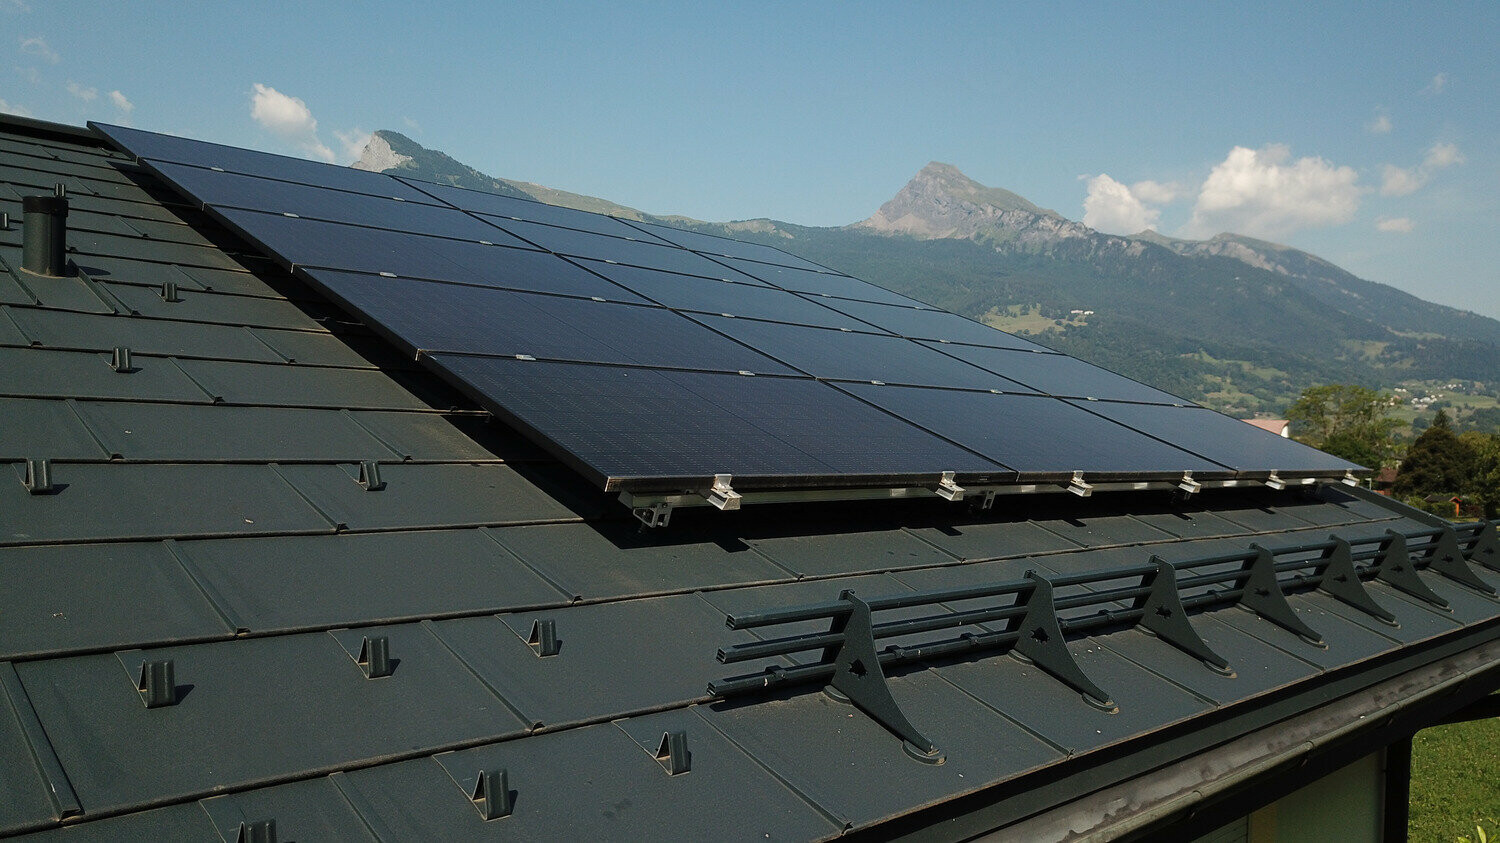 Impianto fotovoltaico integrato in un tetto in tegola R.16 PREFA colore antracite.